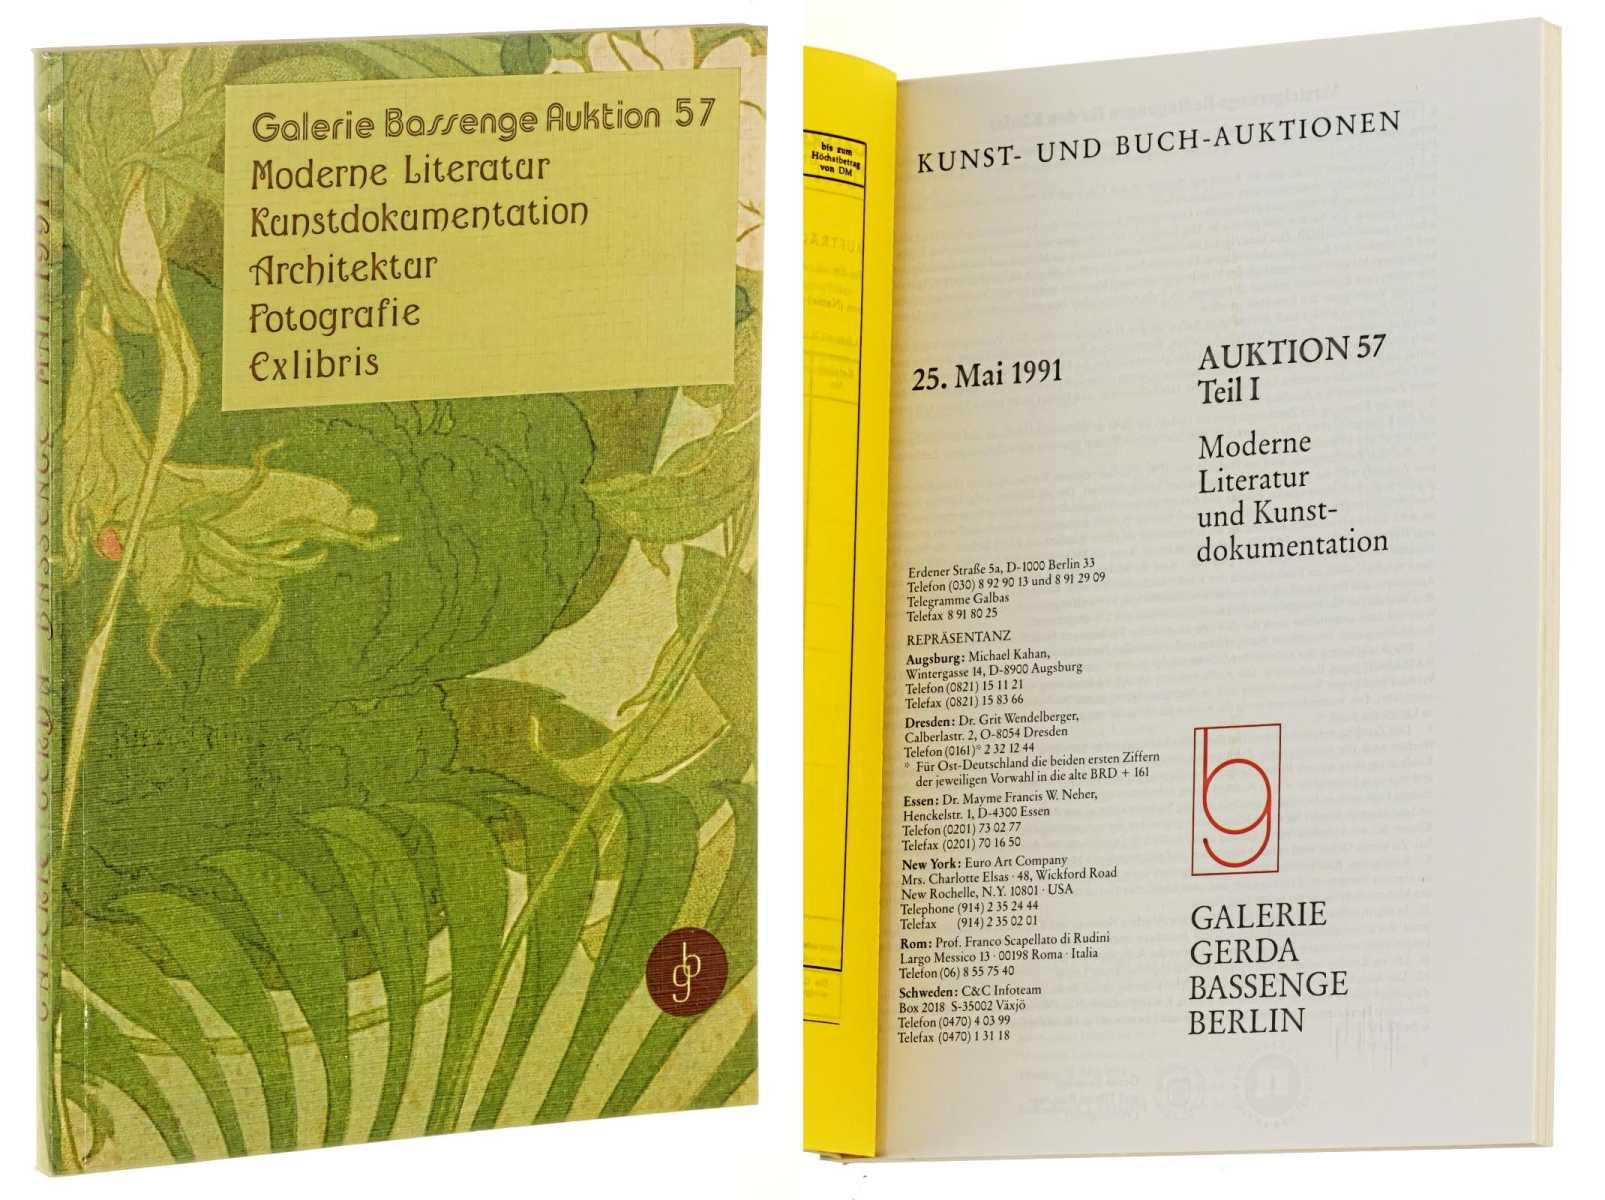 Galerie Gerda Bassenge Berlin:  Auktion 57, Teil 1: Moderne Literatur und Kunstdokumentation. 25. Mai 1991. 